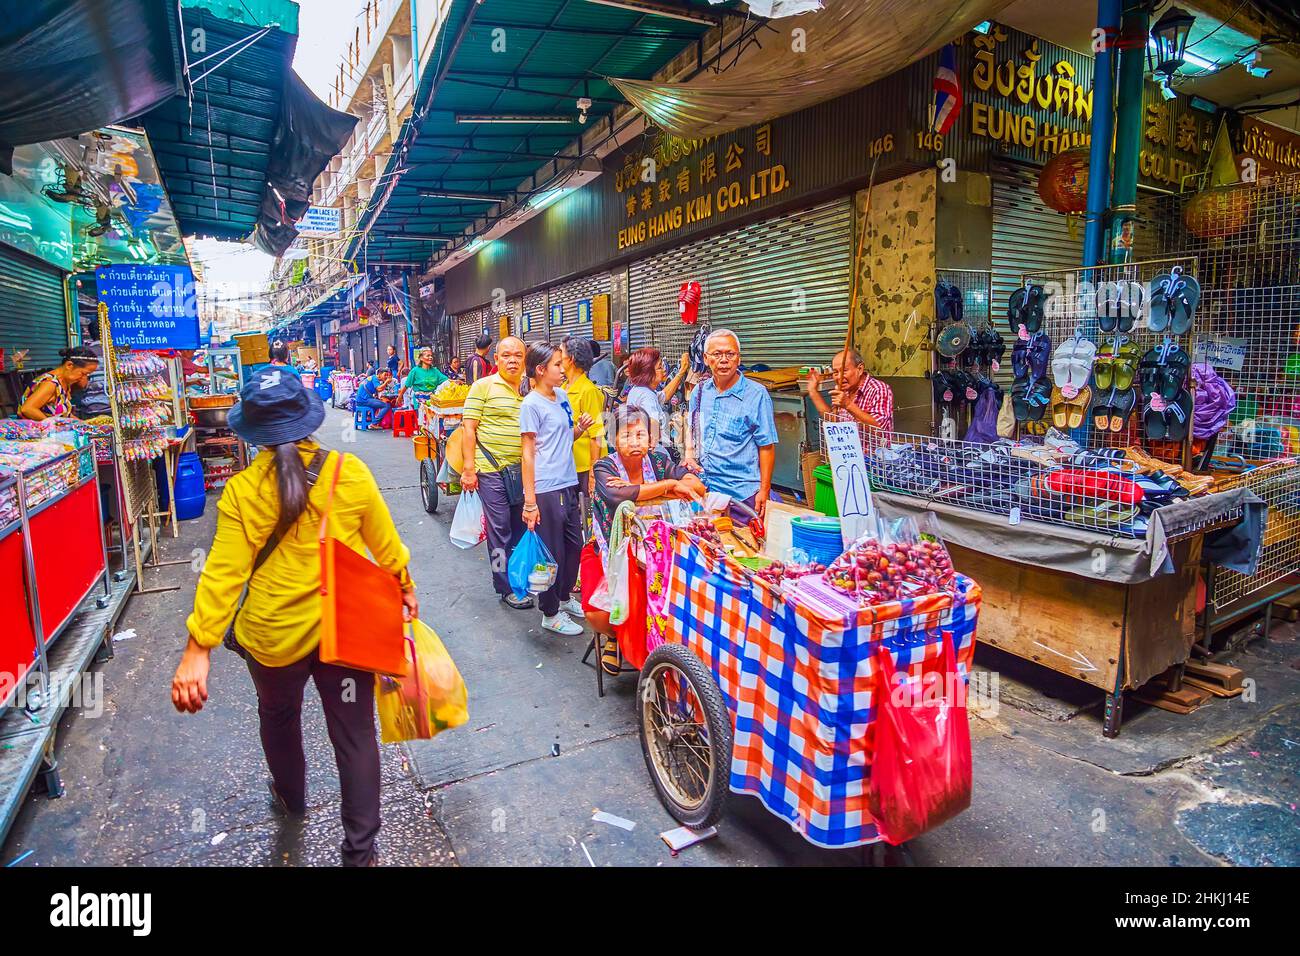 BANGKOK, THAILAND - 12. MAI 2019: Schlendern Sie am 12. Mai in Ban durch die engen Gassen des Sampheng Market in der Umgebung zahlreicher Stände und Street Food Carts Stockfoto